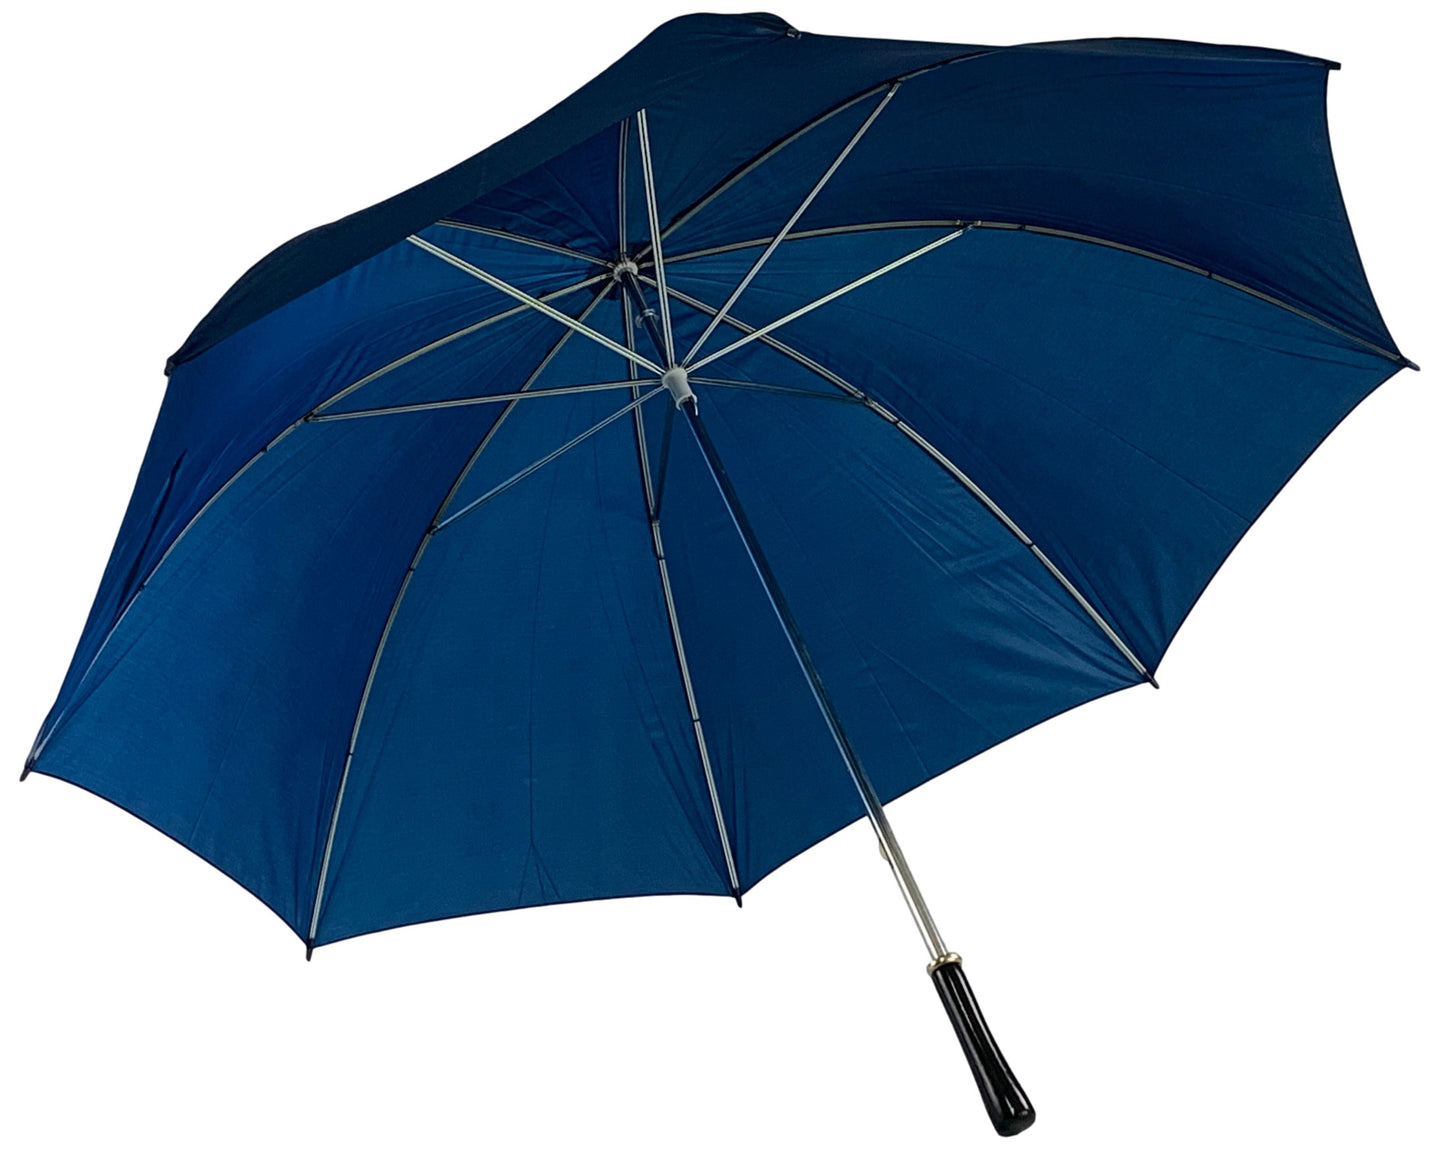 Μπλε μαρίν (σκούρο) ομπρέλα βροχής, συνοδείας, με 8 διπλές ακτίνες.